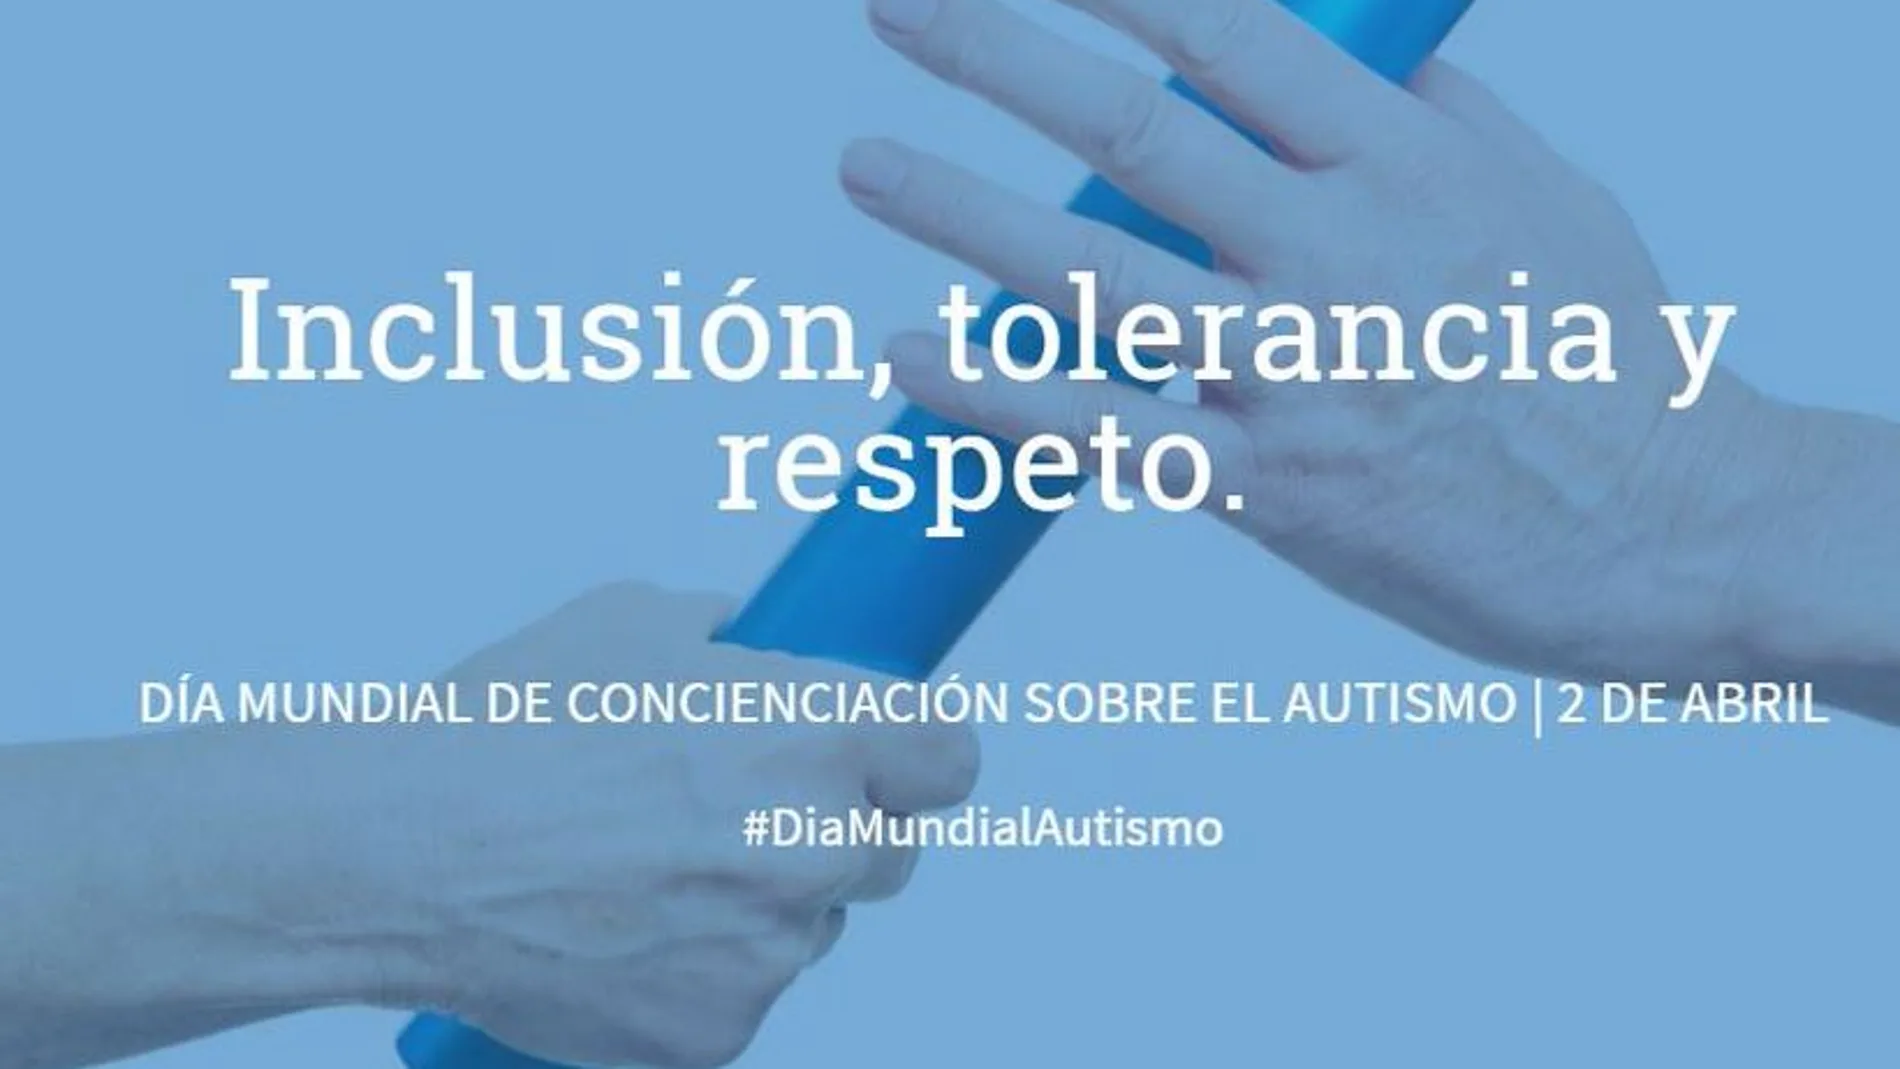 Cada año, el 2 de abril, el movimiento asociativo del autismo de todo el mundo celebra el Día Mundial de Concienciación sobre el Autismo